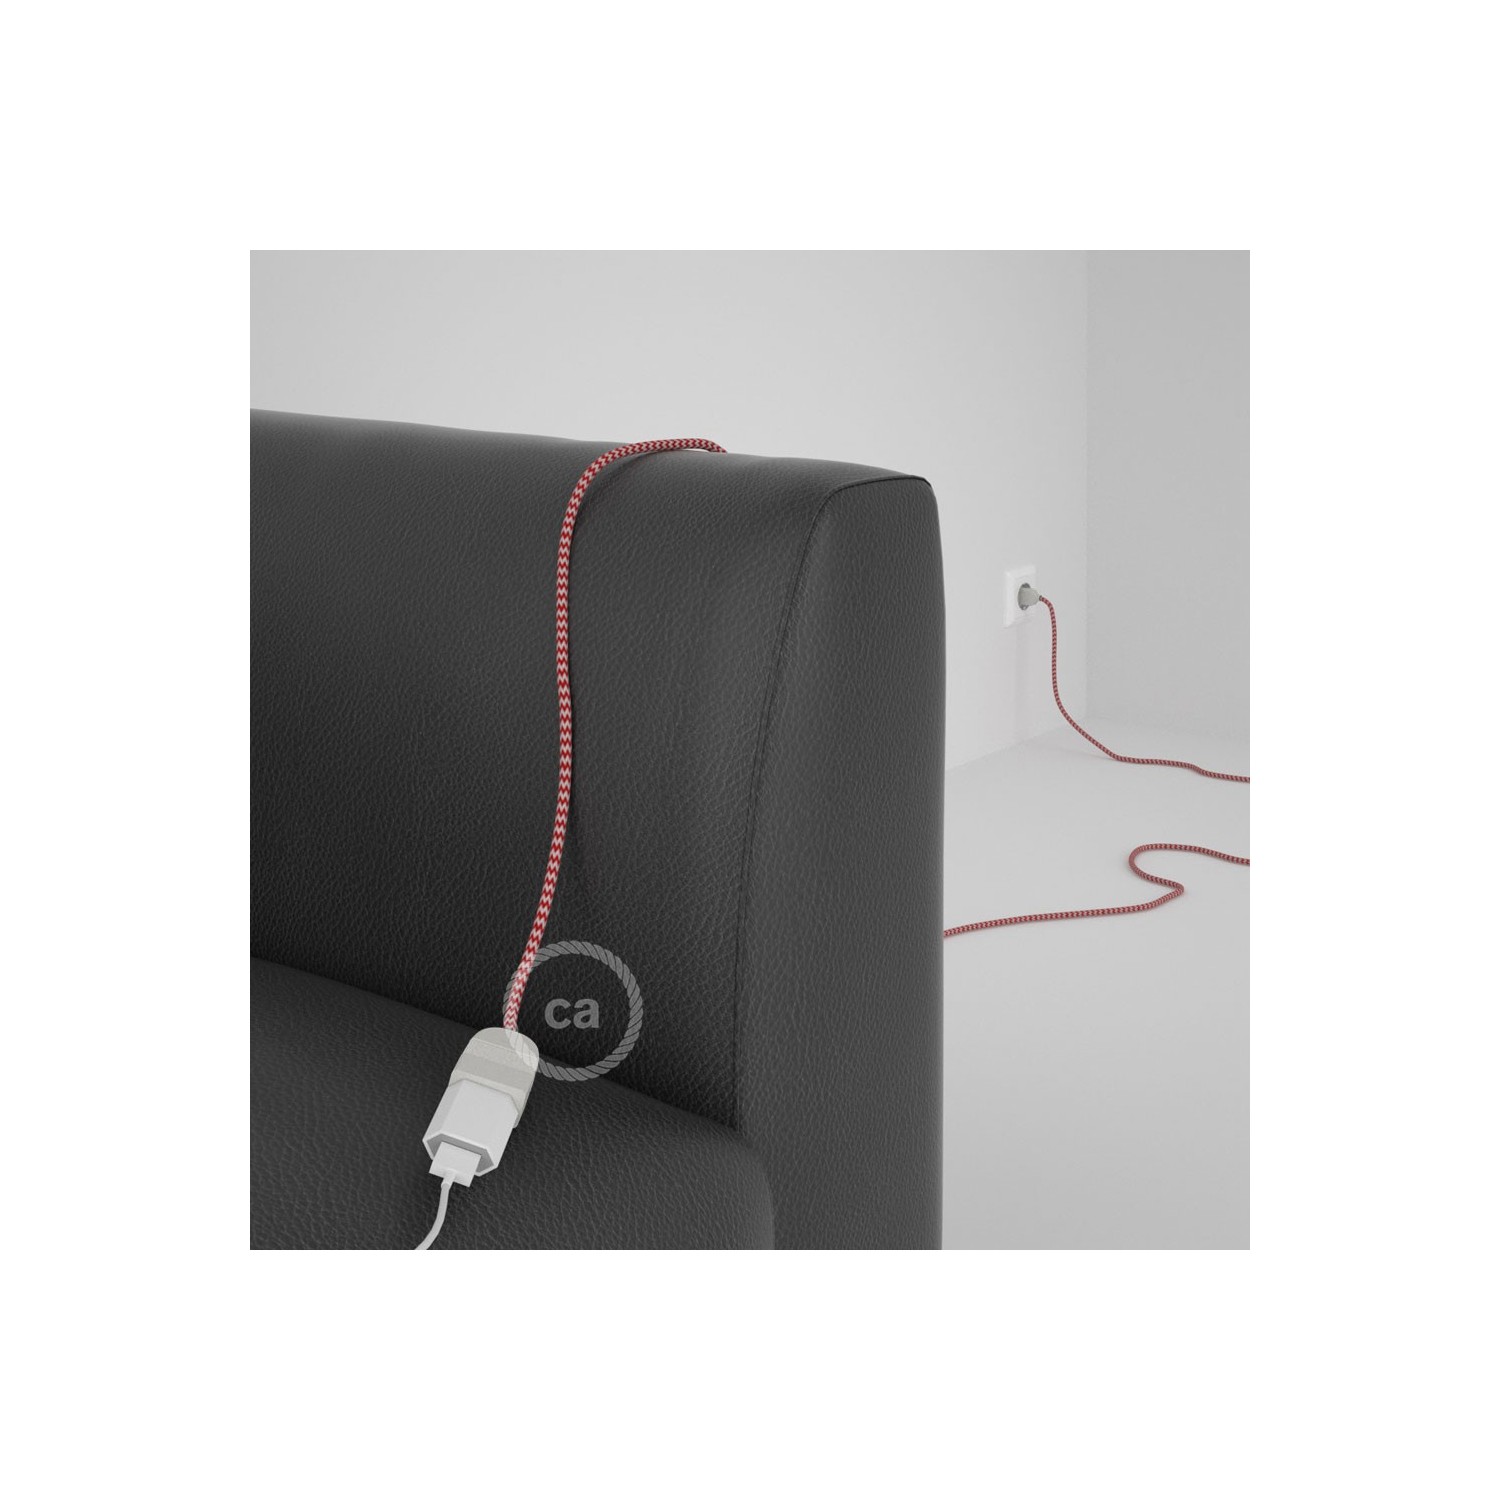 Rallonge électrique avec câble textile RZ09 Effet Soie ZigZag Blanc-Rouge 2P 10A Made in Italy.